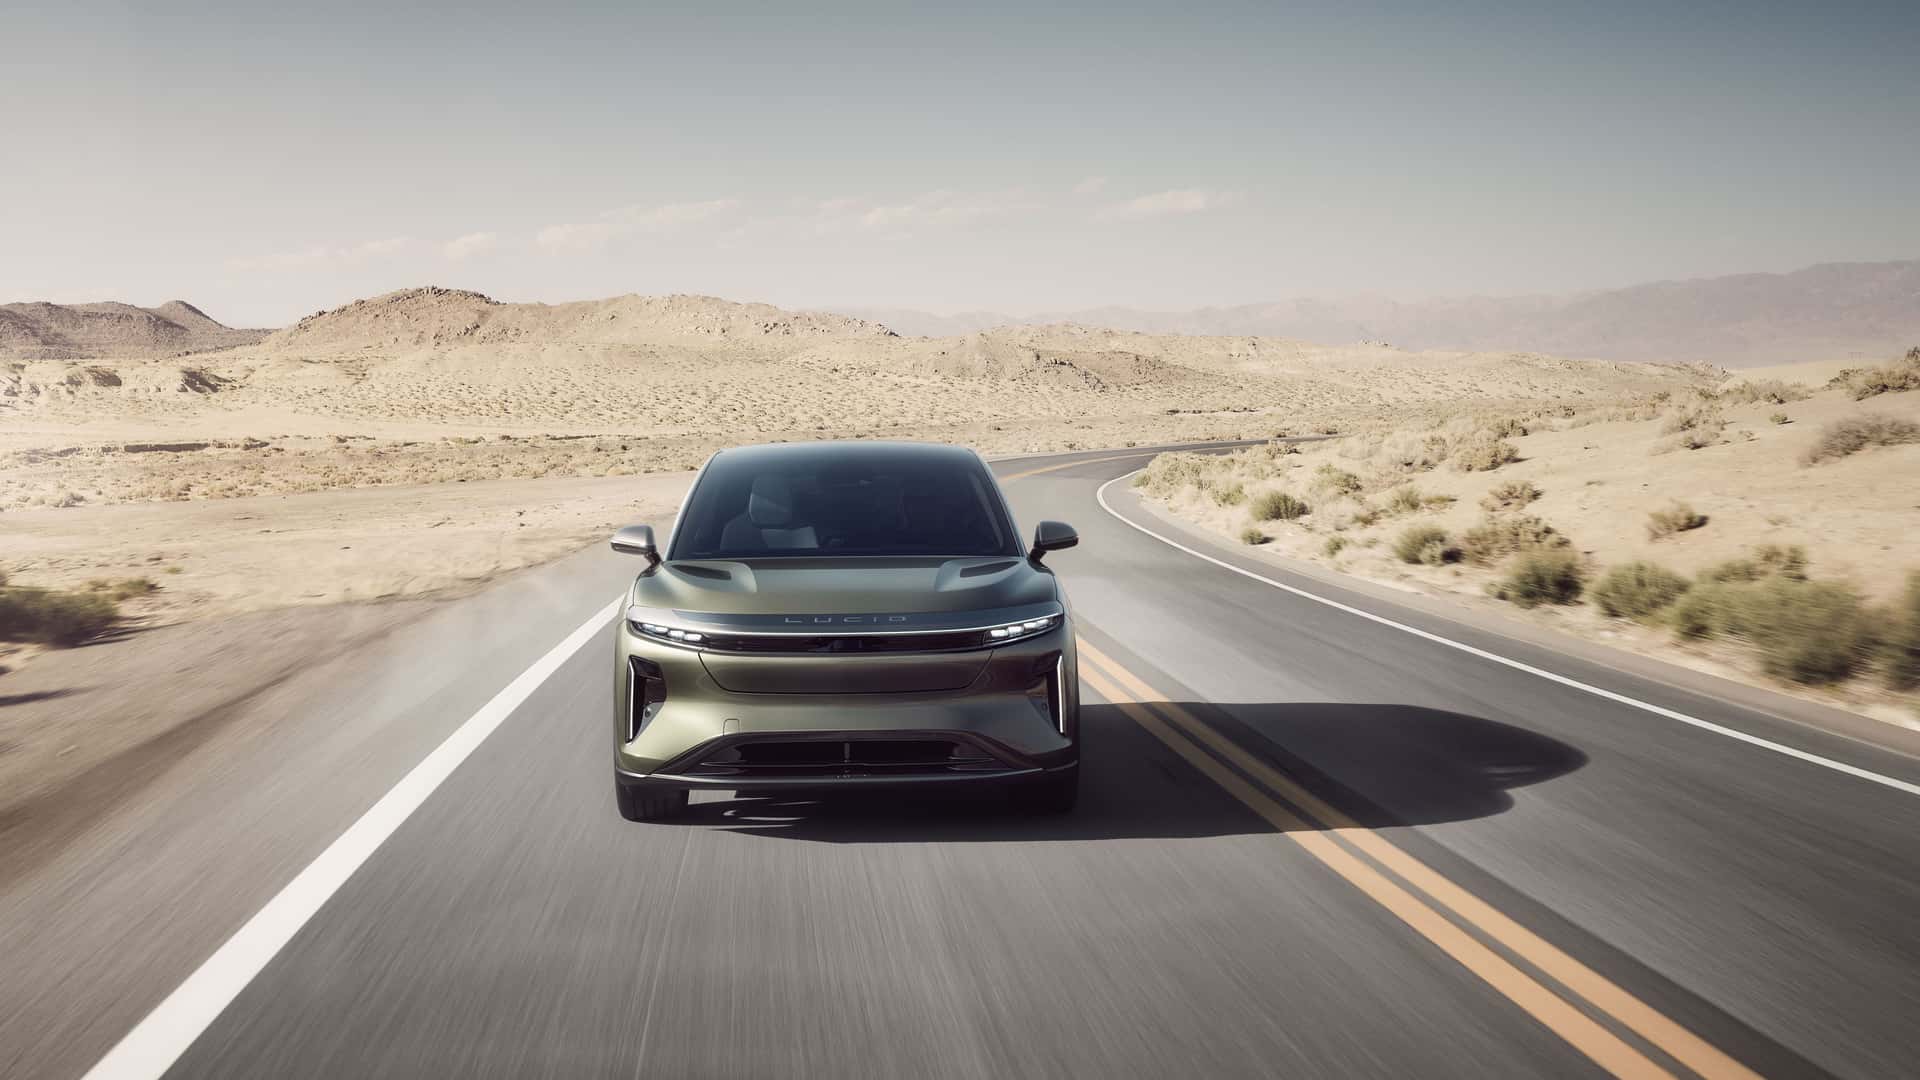 لوسيد جرافيتي SUV الكهربائية الفاخرة تنطلق رسمياً بمدى يتجاوز 700 كيلومتر وتسارع منافس للسيارات الخارقة 24